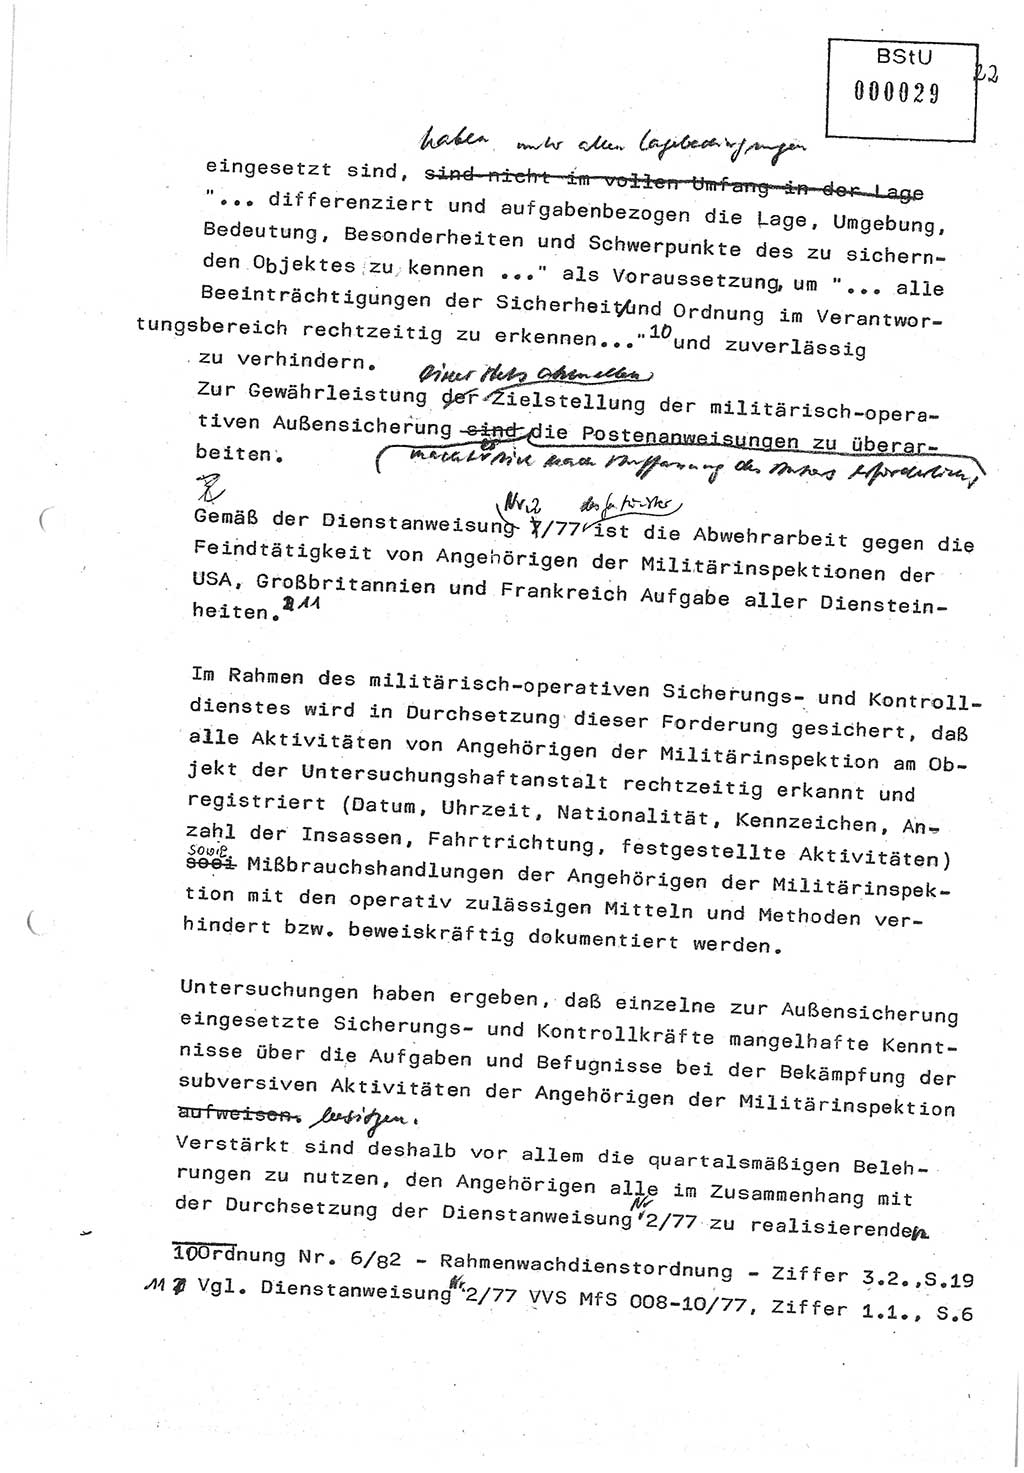 Diplomarbeit (Entwurf) Oberleutnant Peter Parke (Abt. ⅩⅣ), Ministerium für Staatssicherheit (MfS) [Deutsche Demokratische Republik (DDR)], Juristische Hochschule (JHS), Geheime Verschlußsache (GVS) o001-98/86, Potsdam 1986, Seite 29 (Dipl.-Arb. MfS DDR JHS GVS o001-98/86 1986, S. 29)